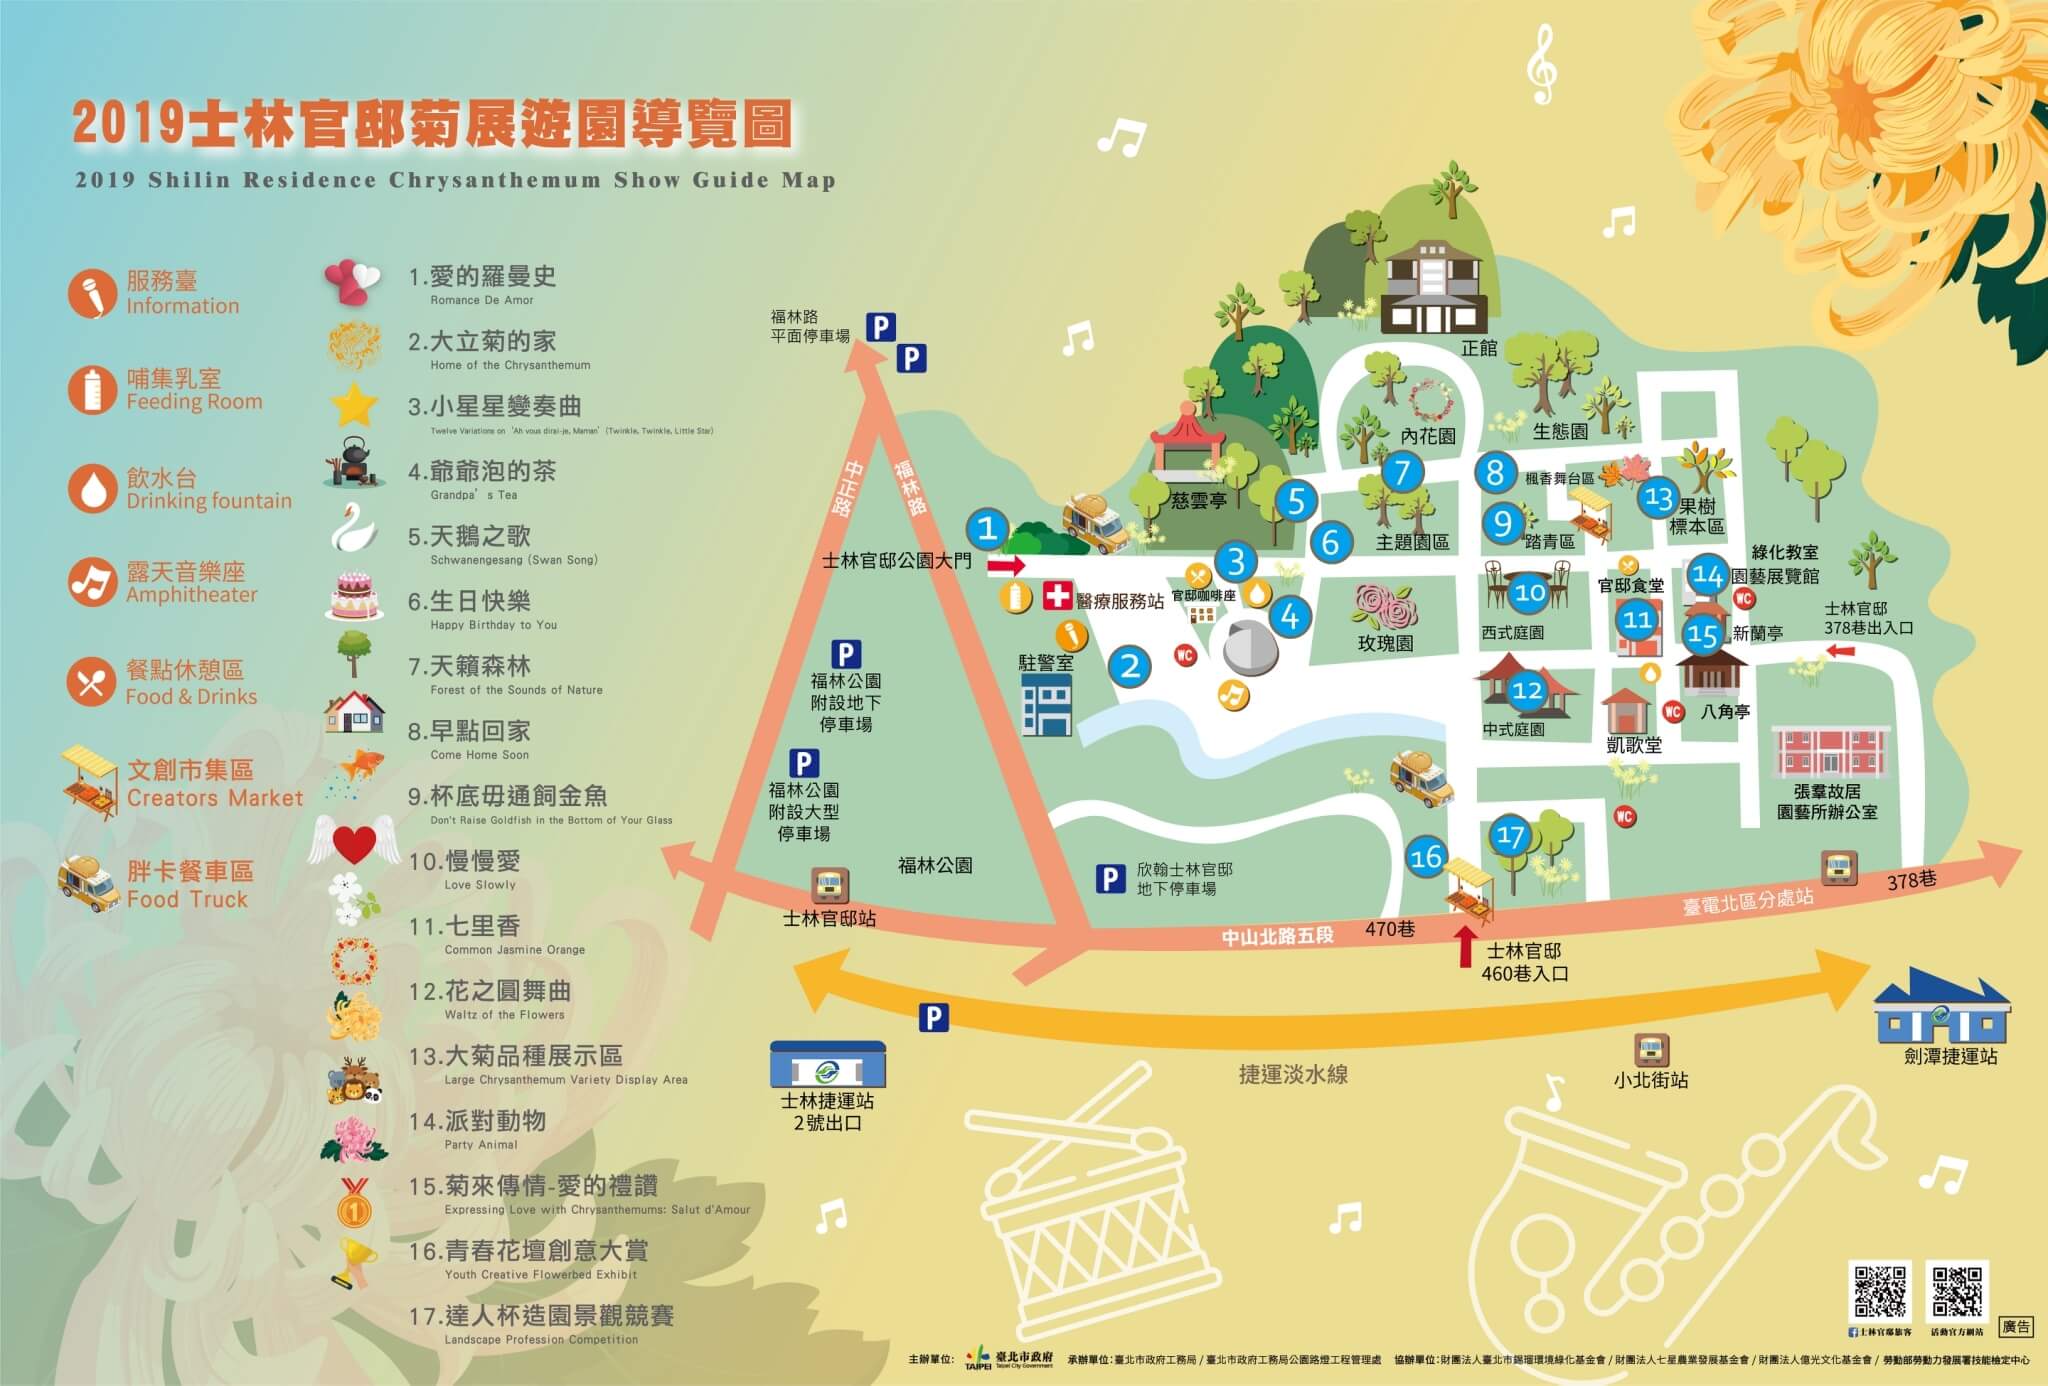 แผนที่บริเวณสถานที่จัดงานแสดงดอกเบญจมาศสวนซื่อหลิ๋นเรสซิเด้นท์กรุงไทเป ประจำปี 2019 (ภาพจาก travel.taipei)